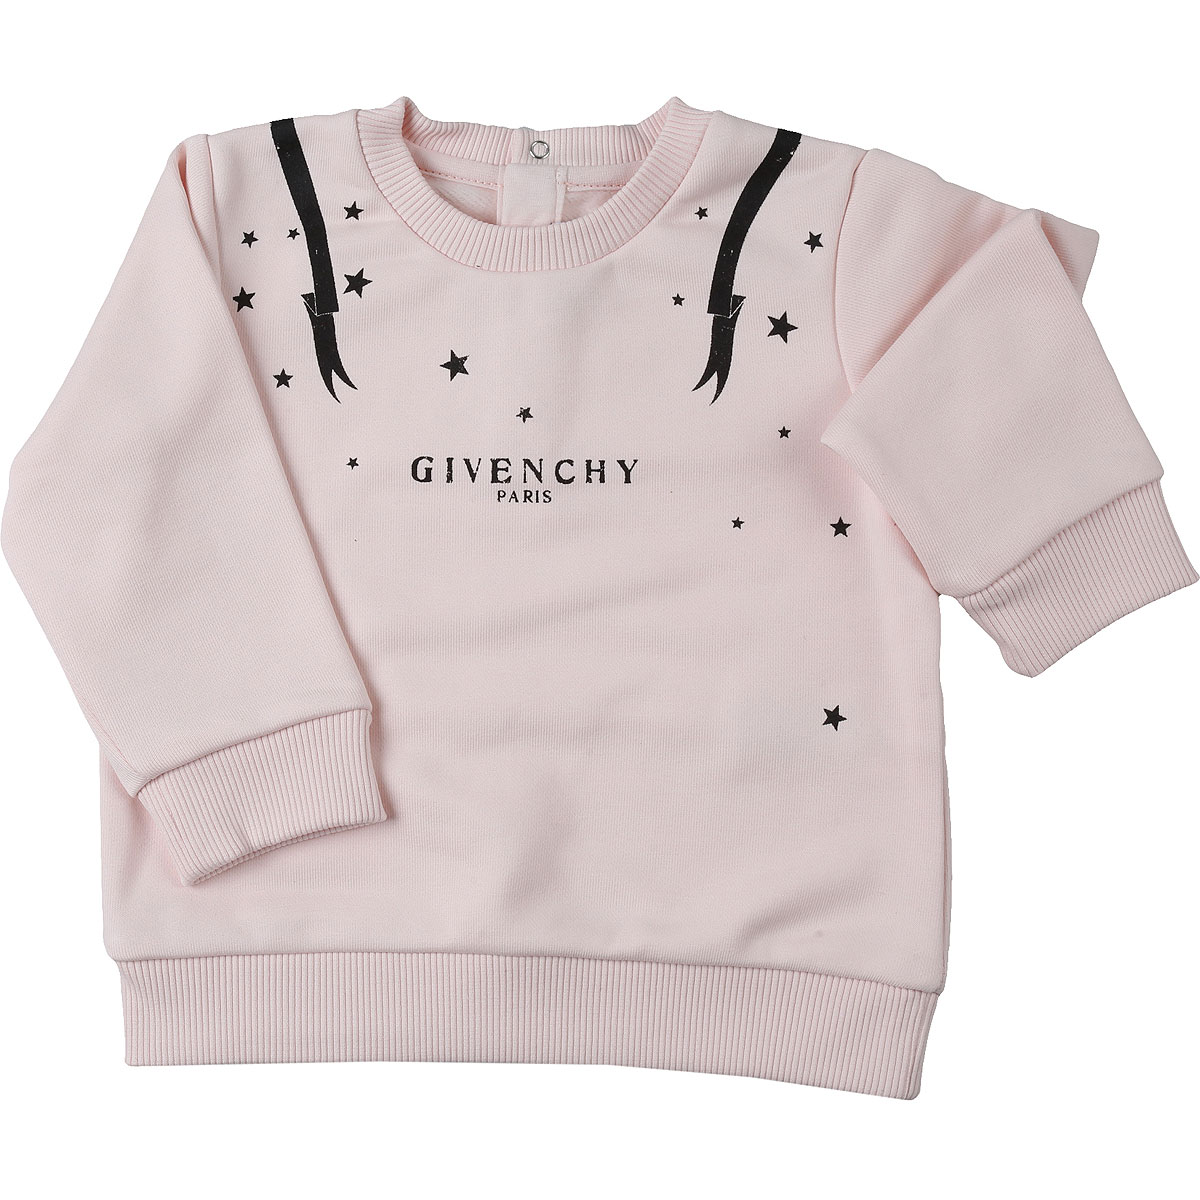 Givenchy Baby Sweatshirt & Kapuzenpullover für Mädchen Günstig im Sale, Baby-Rosa, Baumwolle, 2017, 12M 18M 2Y 3Y 9M